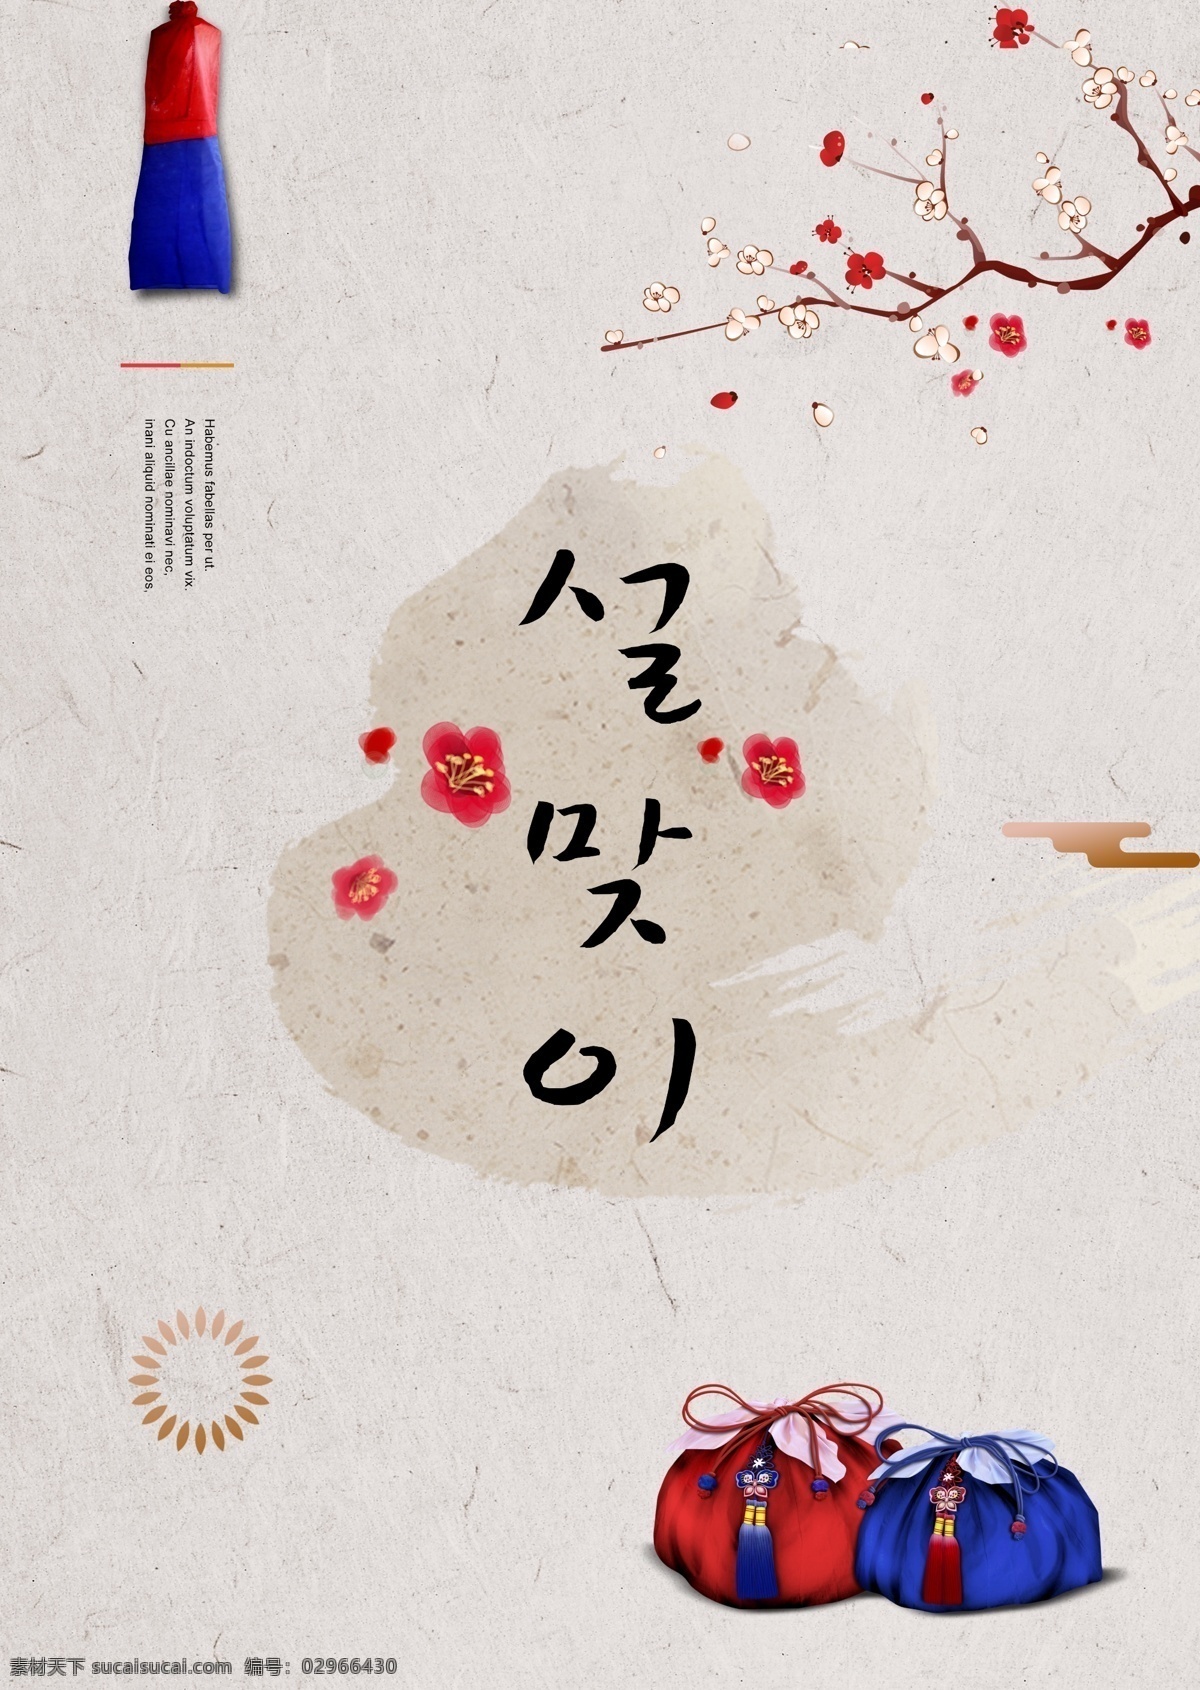 经典 短 灰色 人物 海报 新品 简单 花 花和叶子 新的 红色 梅花 迎接新的一年 蓝色 朝鲜的